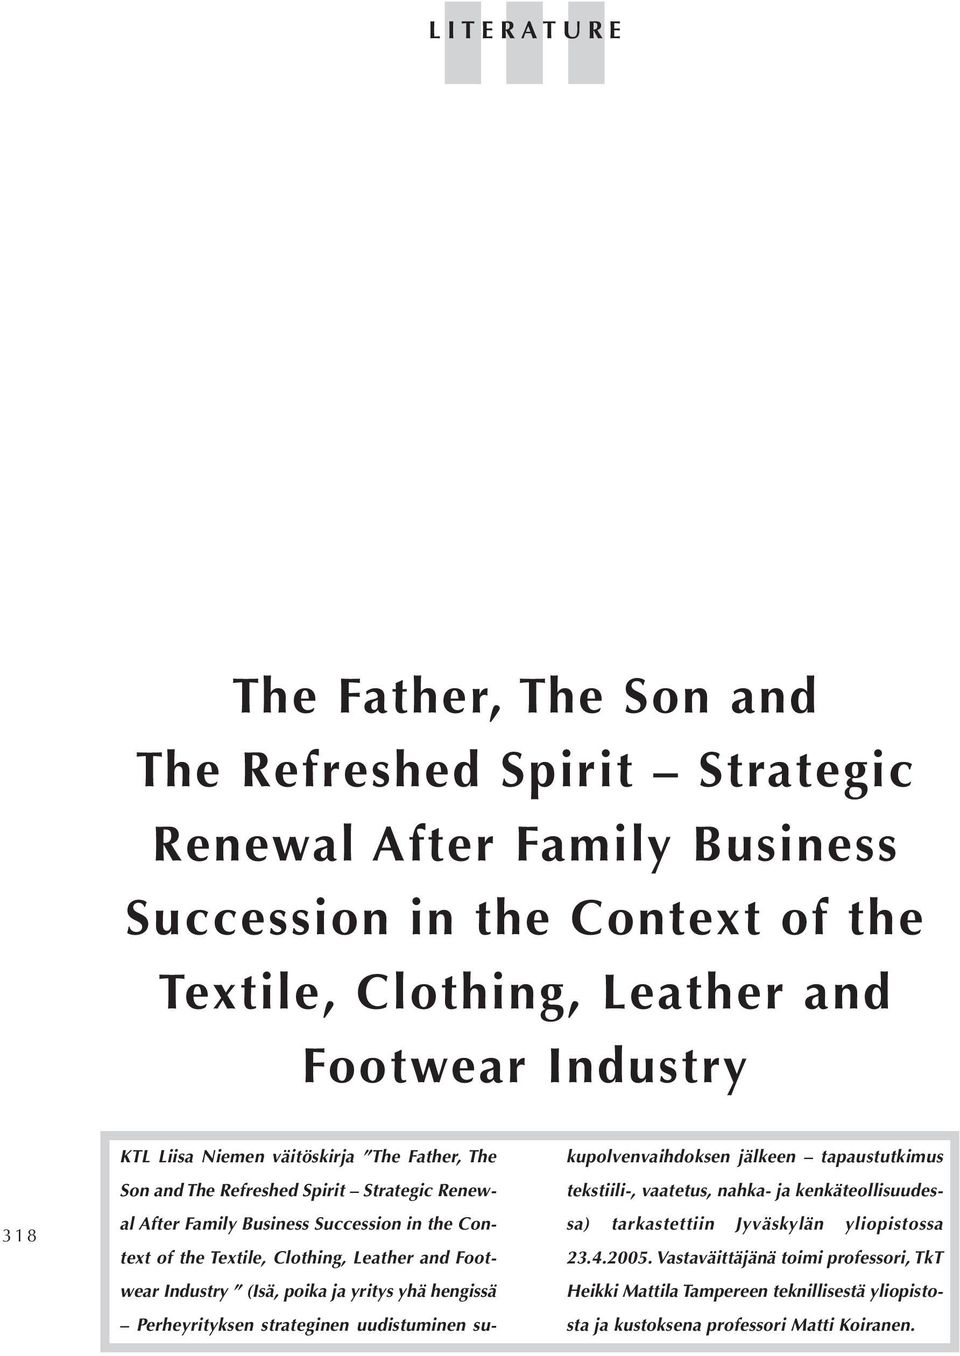 Footwear Industry (Isä, poika ja yritys yhä hengissä Perheyrityksen strateginen uudistuminen sukupolvenvaihdoksen jälkeen tapaustutkimus tekstiili-, vaatetus, nahka- ja